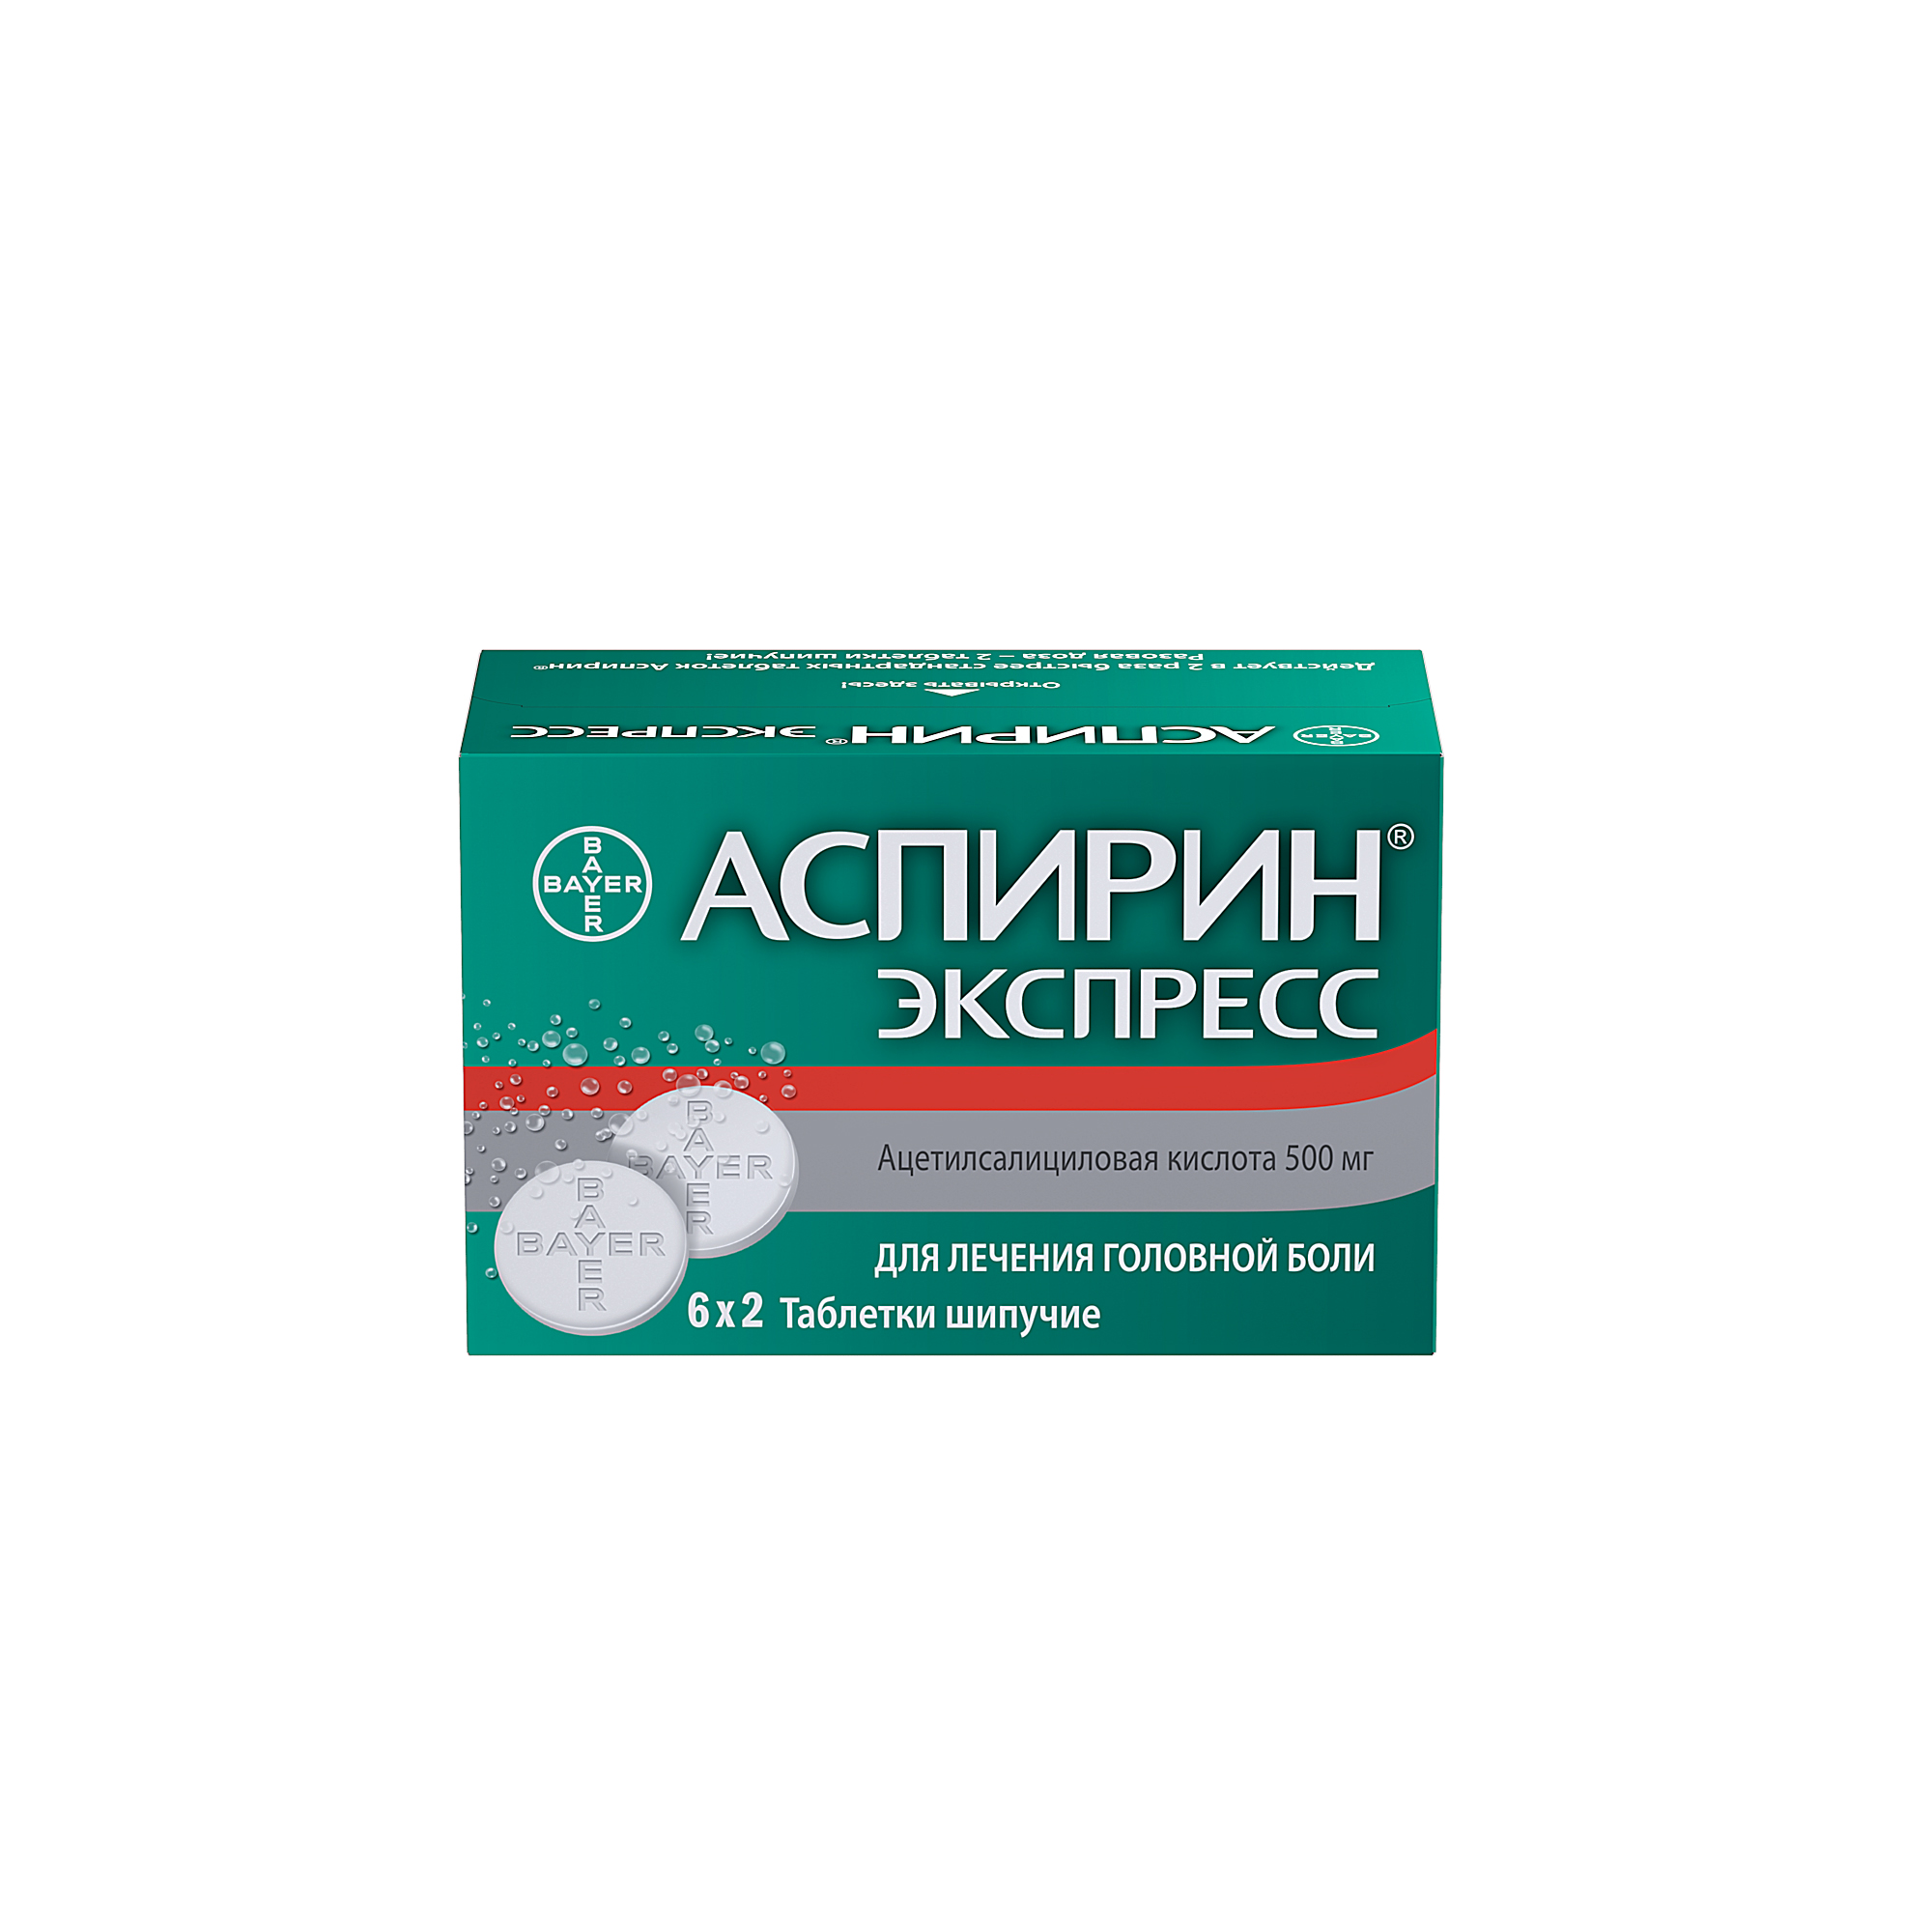 Аспирин Экспресс таблетки шипучие 500 мг 12 шт., Bayer  - купить со скидкой